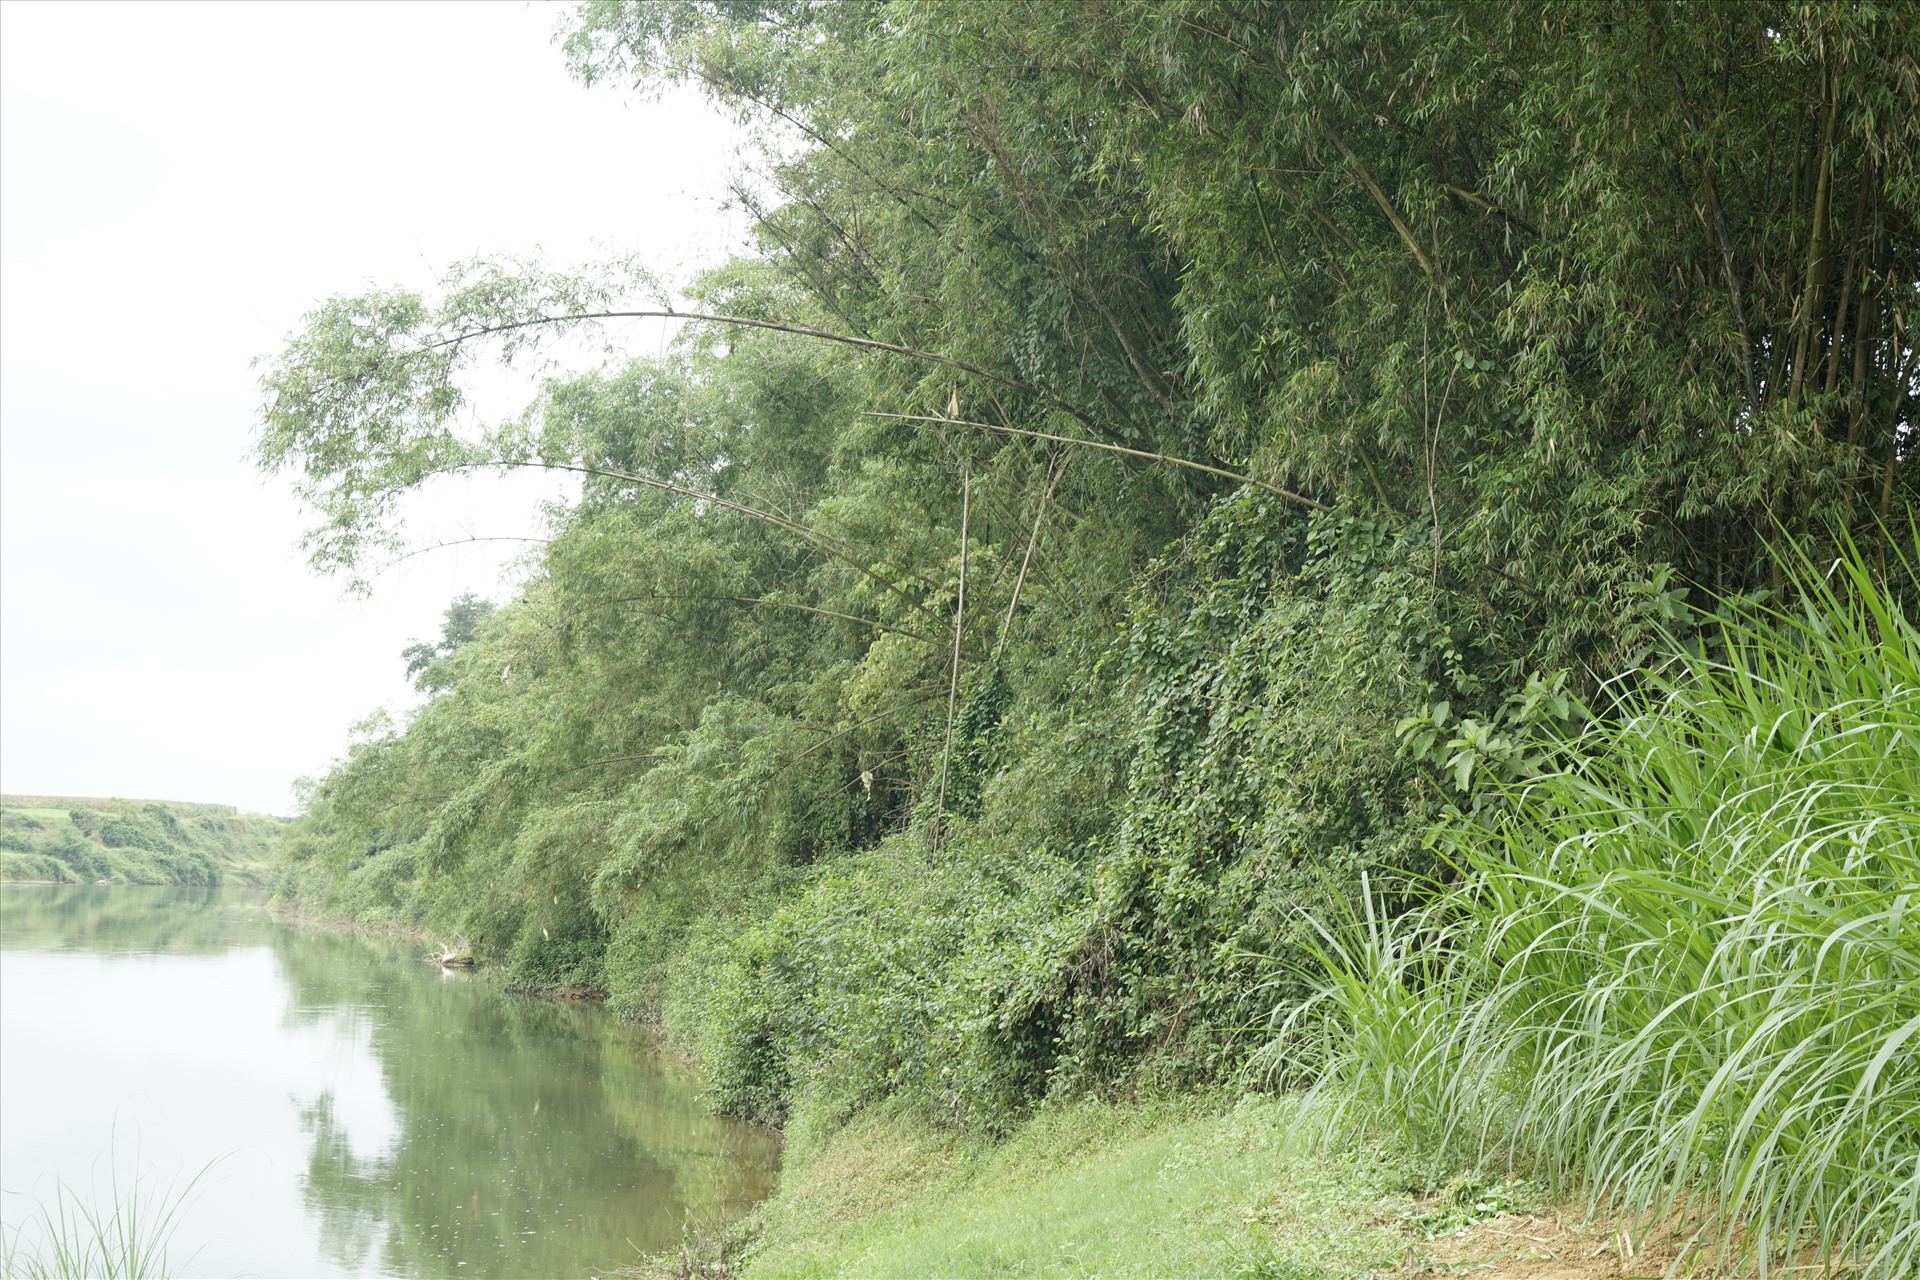 Bờ sông Ngàn Sâu qua xã Gia Phố với hàng cây cối um tùm, không có hiện tượng sạt lở nhưng vẫn được đầu tư xây kè chống sạt lở. Ảnh: Trần Tuấn